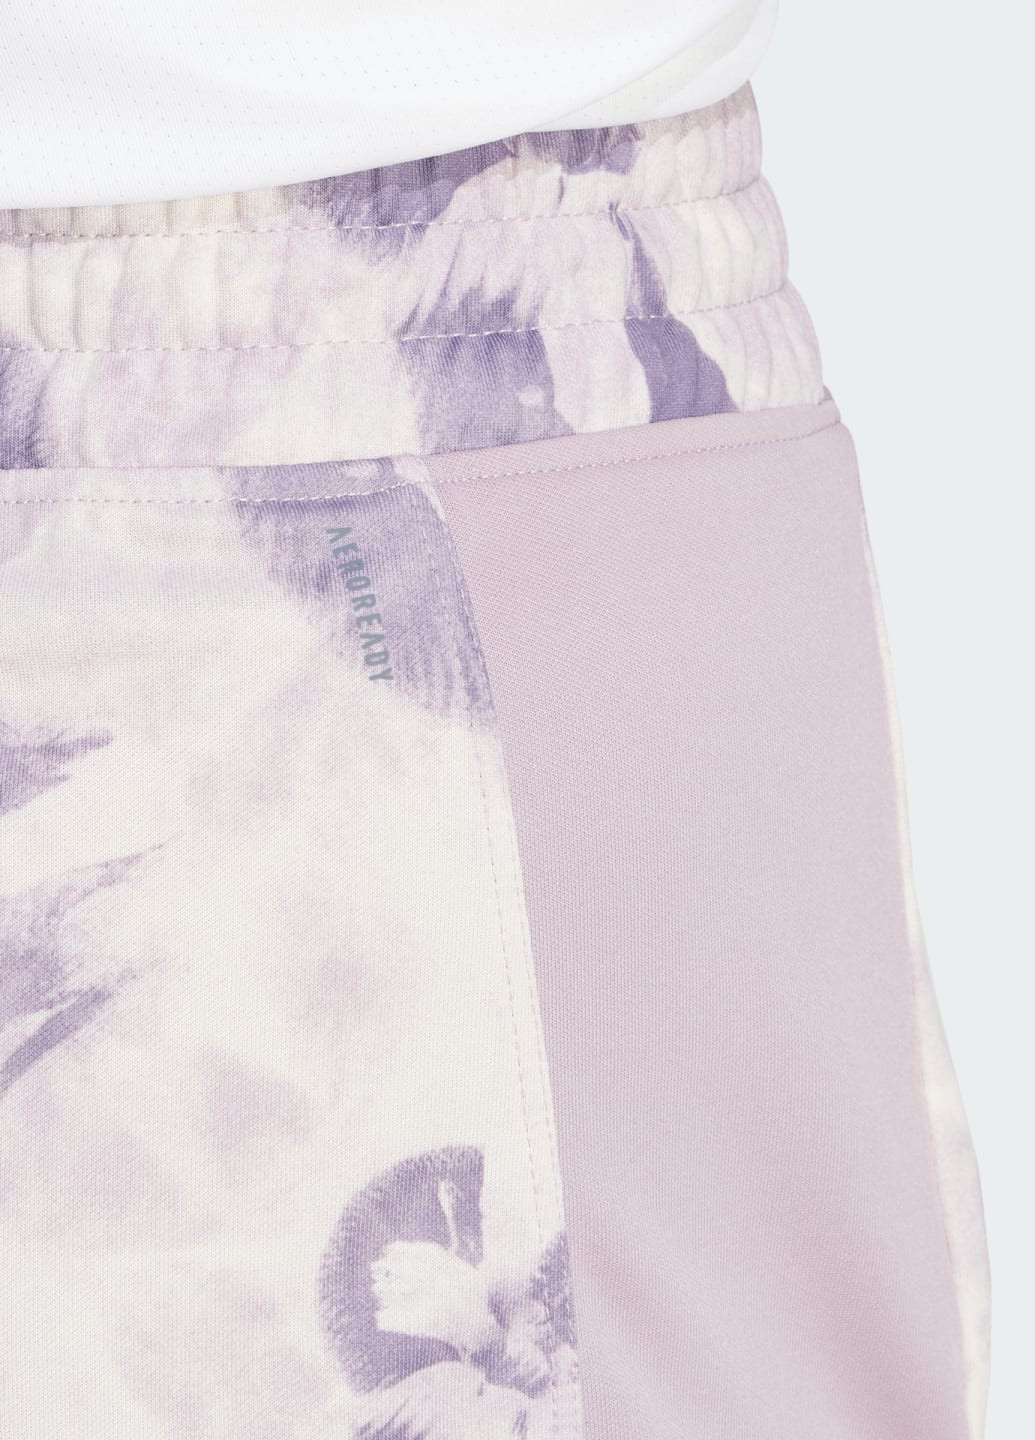 Шорты Pacer Essentials AOP Flower Tie-Dye Knit adidas (276839191)